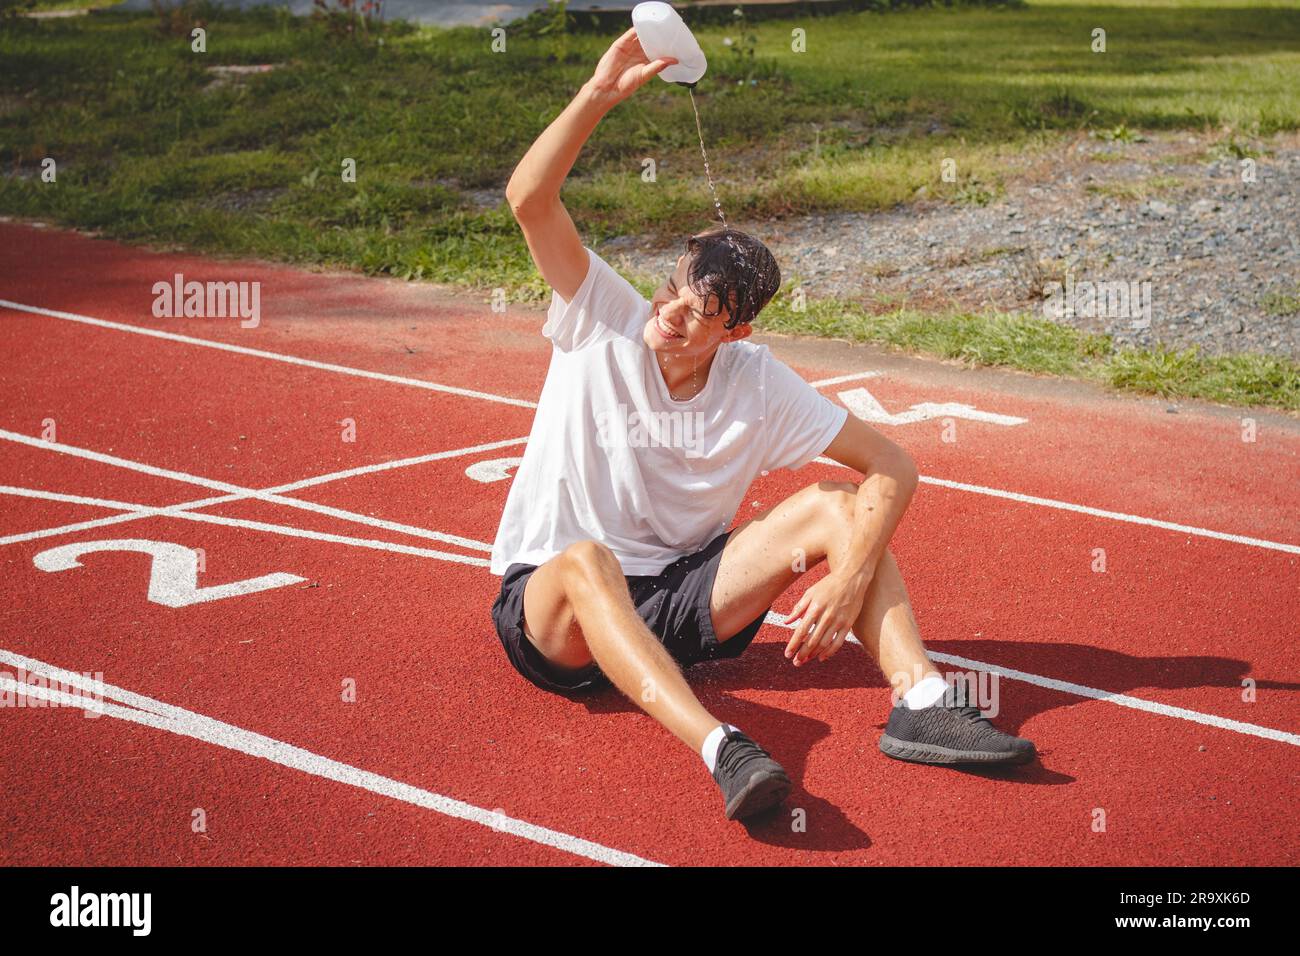 Der junge Sportler erfrischt sich nach einem harten Training auf dem sportlichen Oval in der intensiven Hitze mit Wasser. Ausdauertraining. Braunhaariger Jugendlicher. Stockfoto